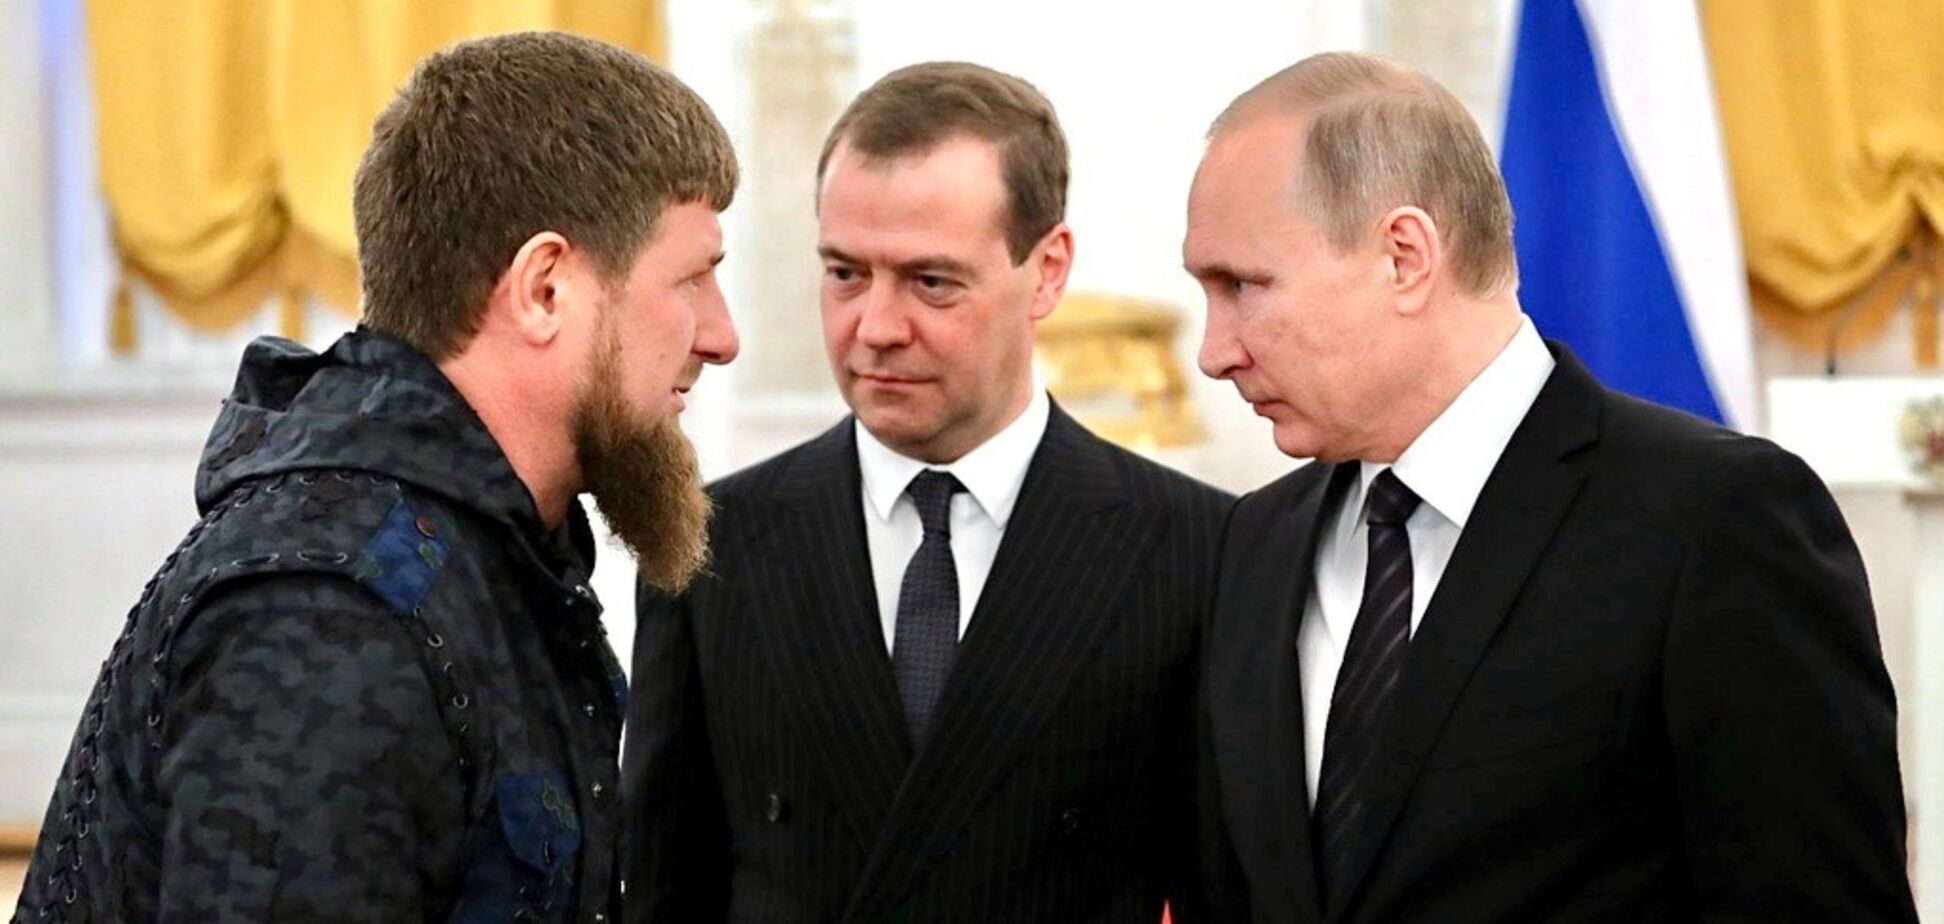 Рамзан Кадыров, Дмитрий Медведев и Владимир Путин